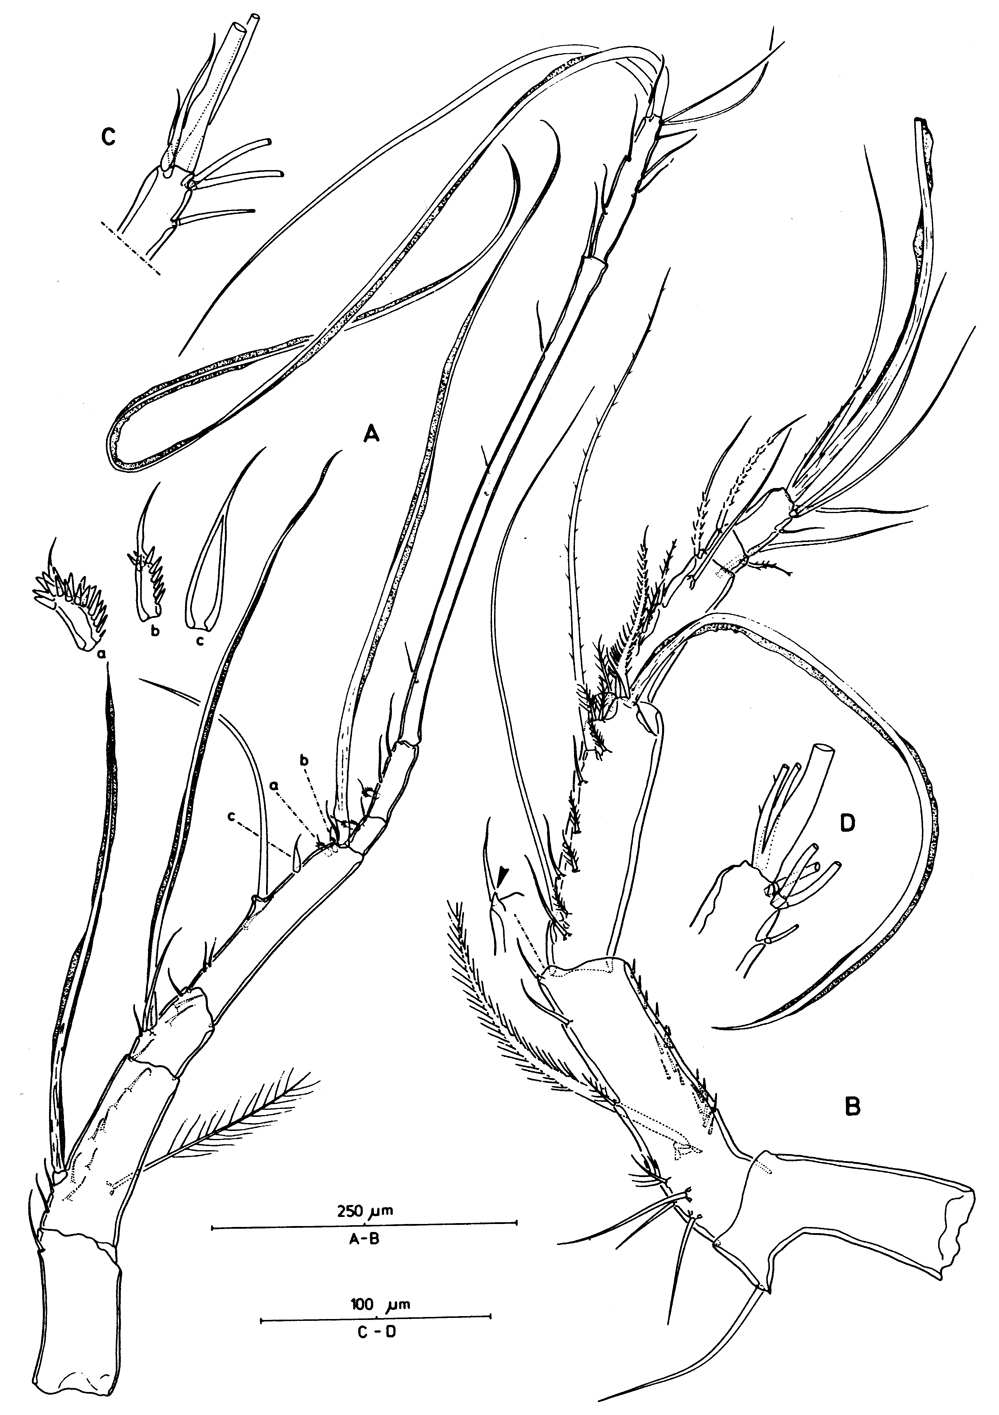 Species Aegisthus mucronatus - Plate 5 of morphological figures